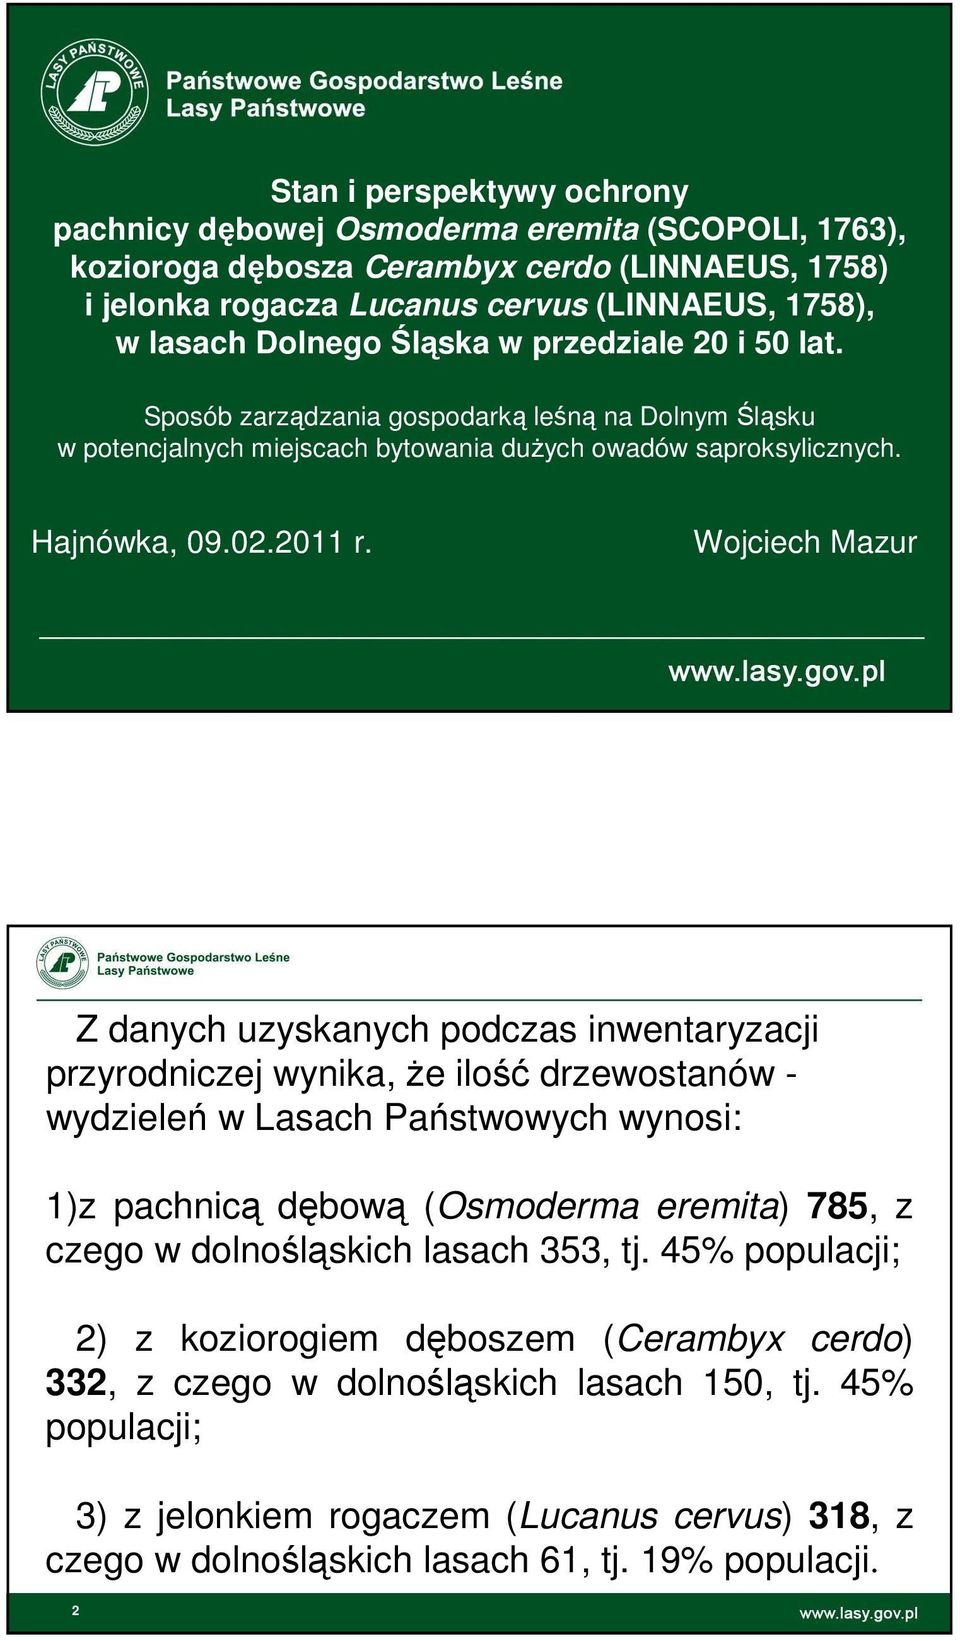 Wojciech Mazur Z danych uzyskanych podczas inwentaryzacji przyrodniczej wynika, że ilość drzewostanów - wydzieleń w Lasach Państwowych wynosi: 1)z pachnicą dębową (Osmoderma eremita) 785, z czego w